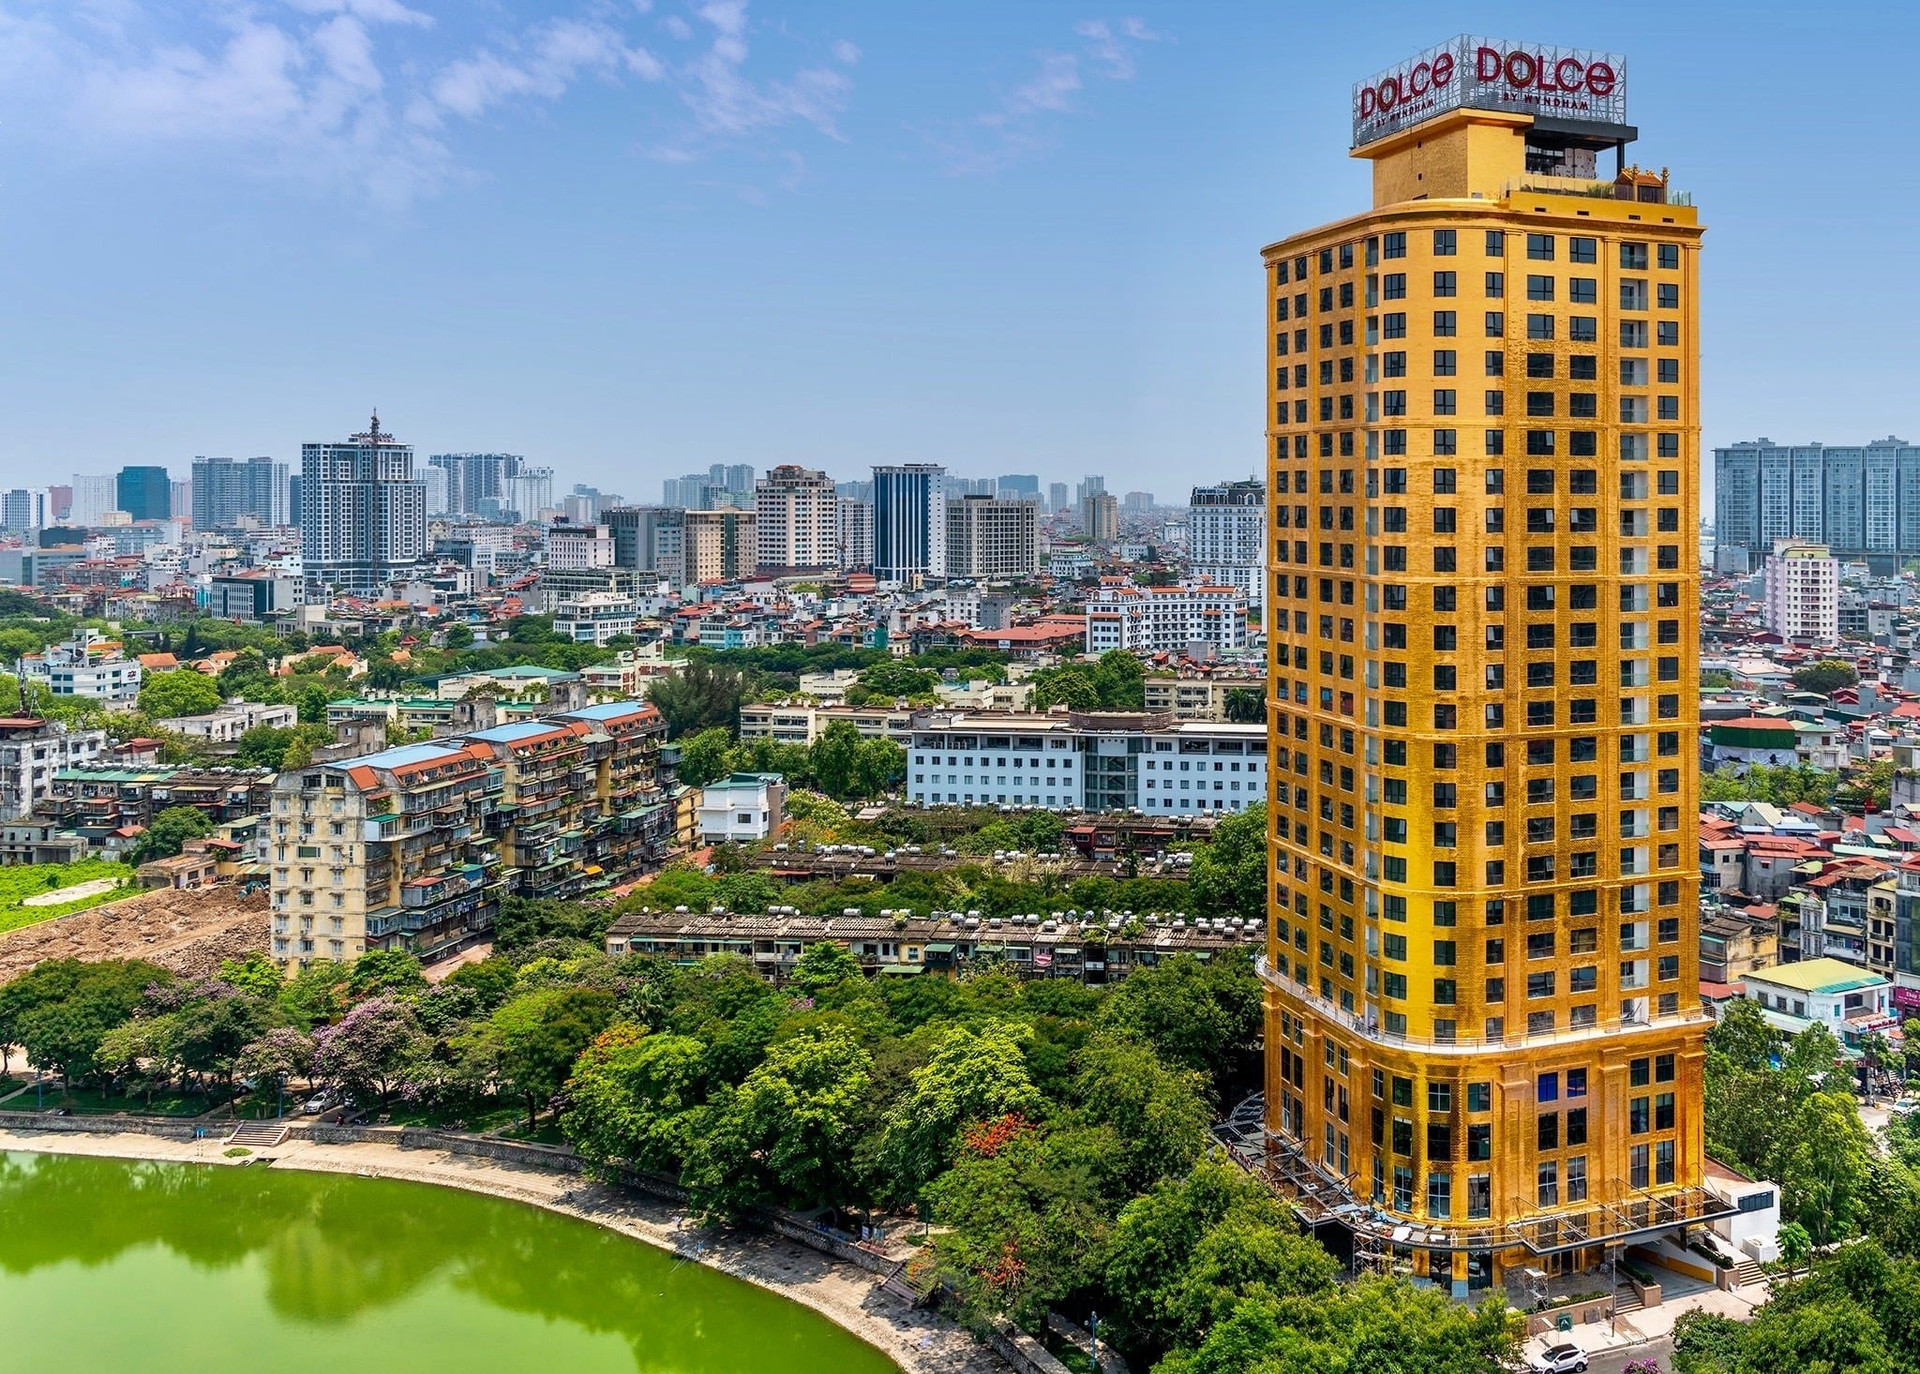 Chào bán giá 250 triệu USD, khách sạn dát vàng của đại gia Đường “bia” định giá cao hơn cả Metropole Hanoi có vị trí đắc địa hơn nhiều?